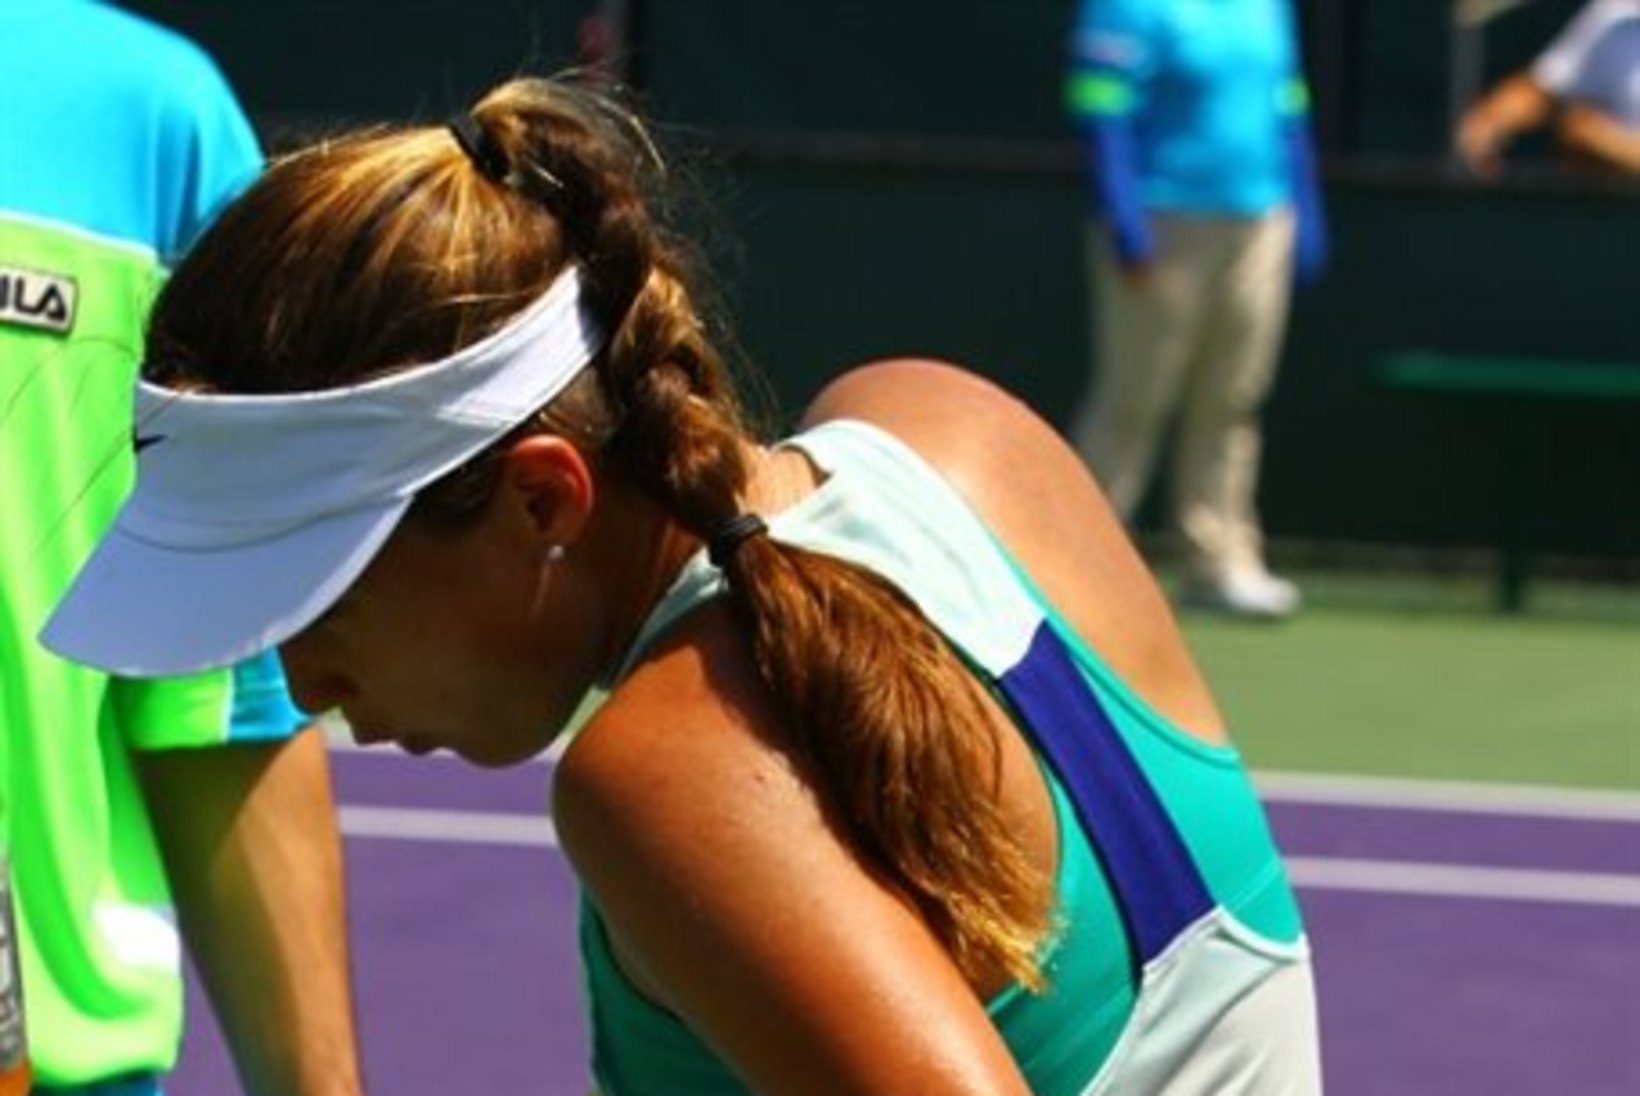 FOTOD: tige herilane sutsas tennisepiigat otse kannikasse